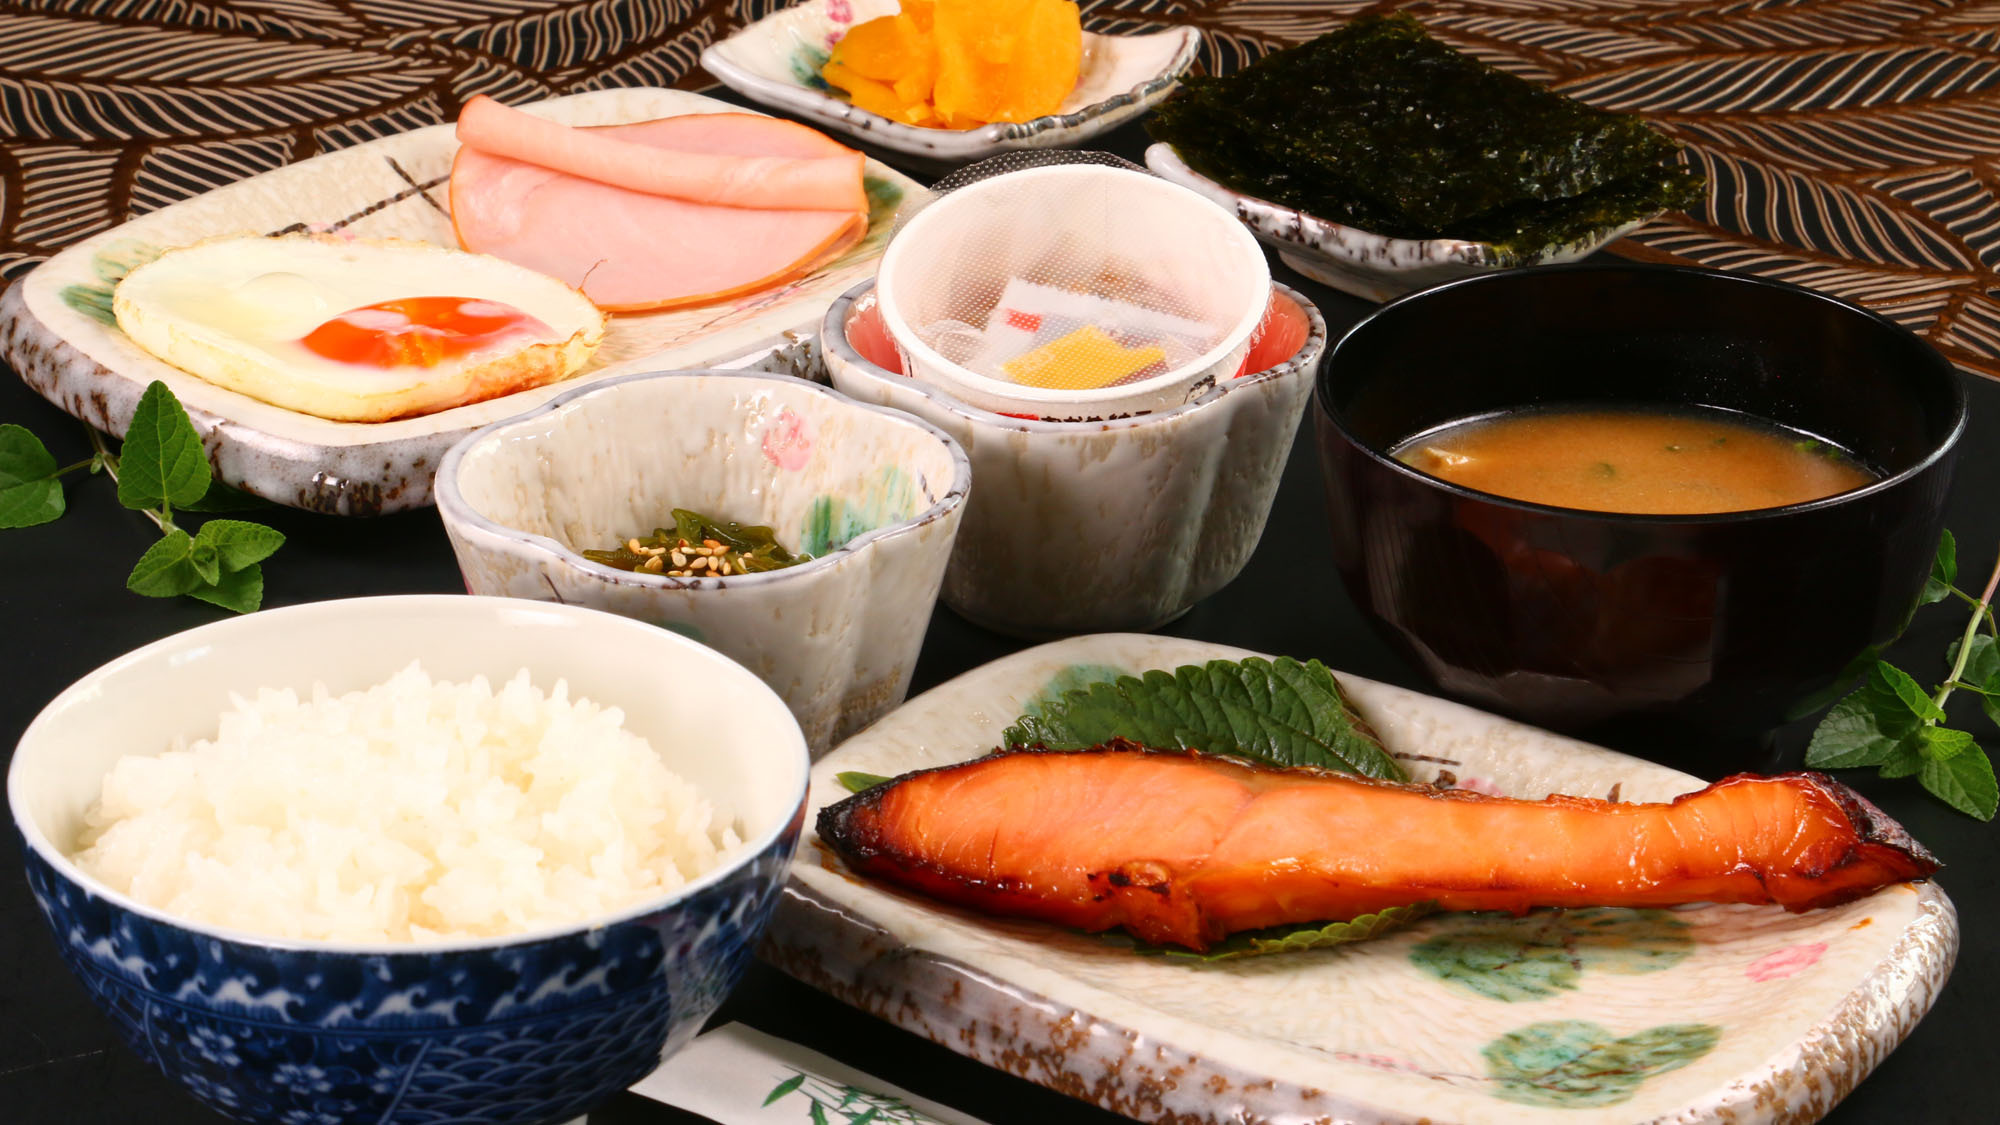 【朝食】焼き魚メイン料理の朝食一例朝から健康なメニューです*